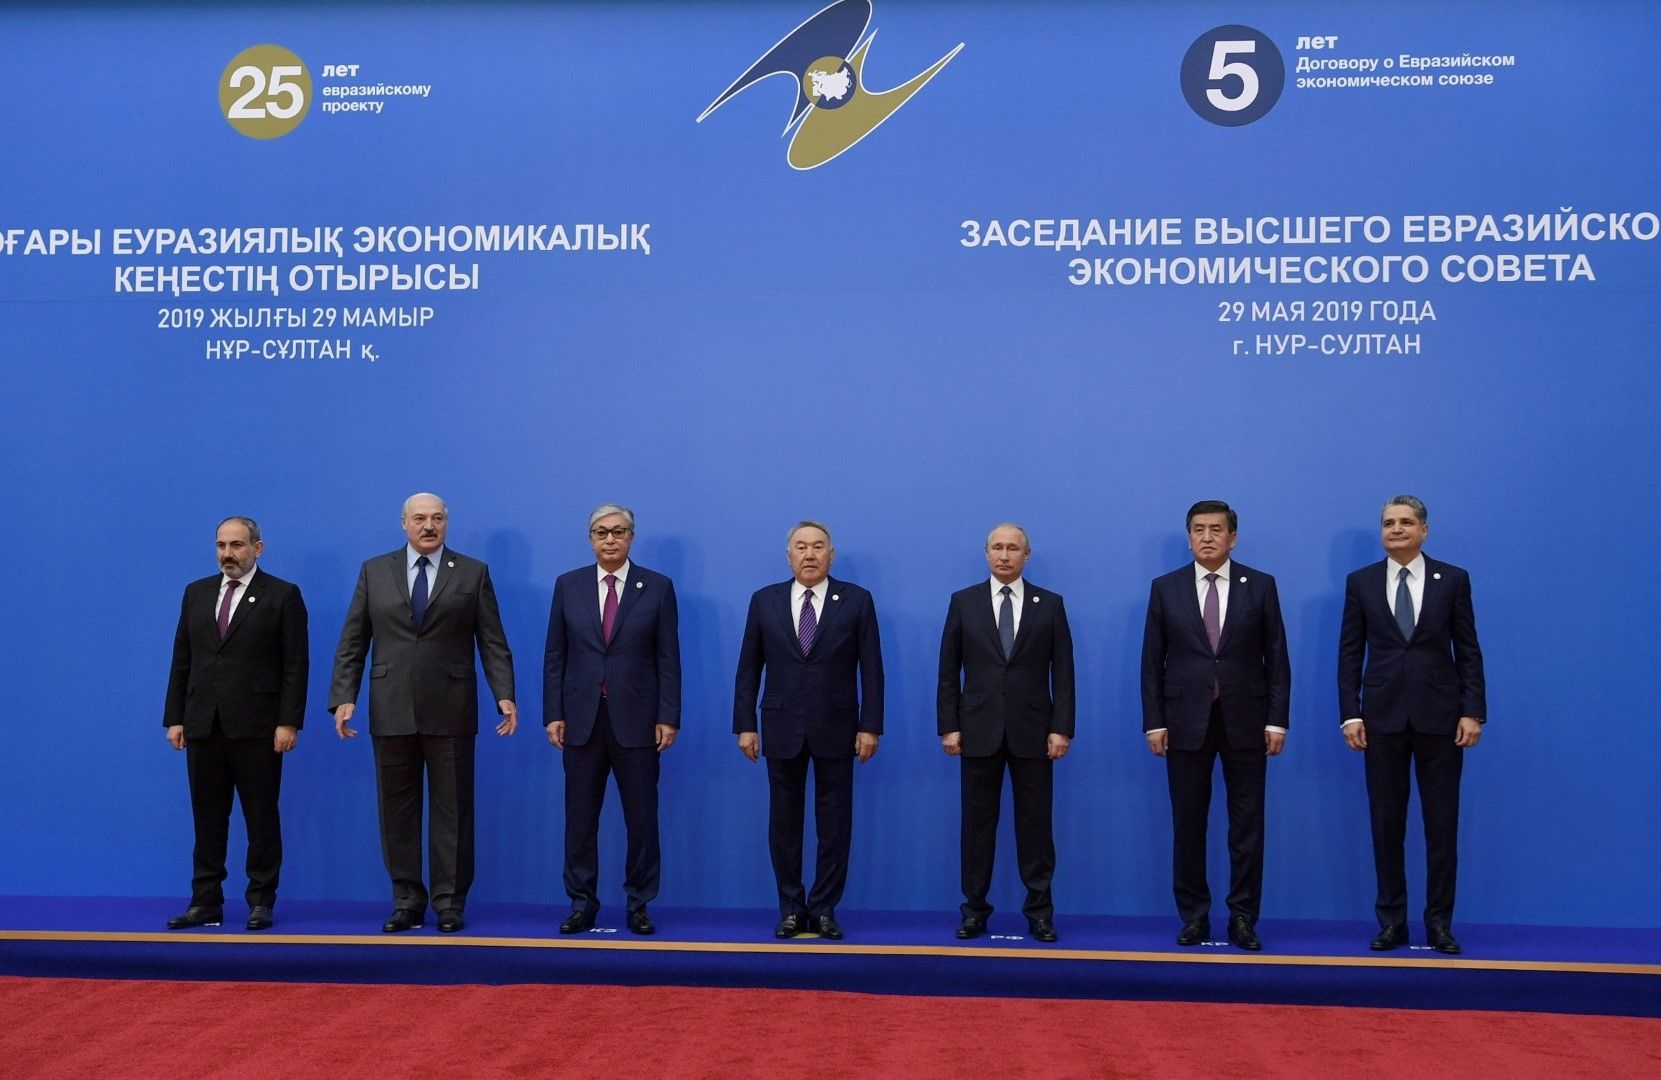 Лидерите на Евразийския съюз (от ляво): Никол Пашинян, Александър Лукашенко, Касим-Йомарт Токаев, Нурсултан Назарбаев, Владимир Путин, Соронбей Женбеков и Тигран Саркисян - председател на борда на Евразийския икономическ съюз